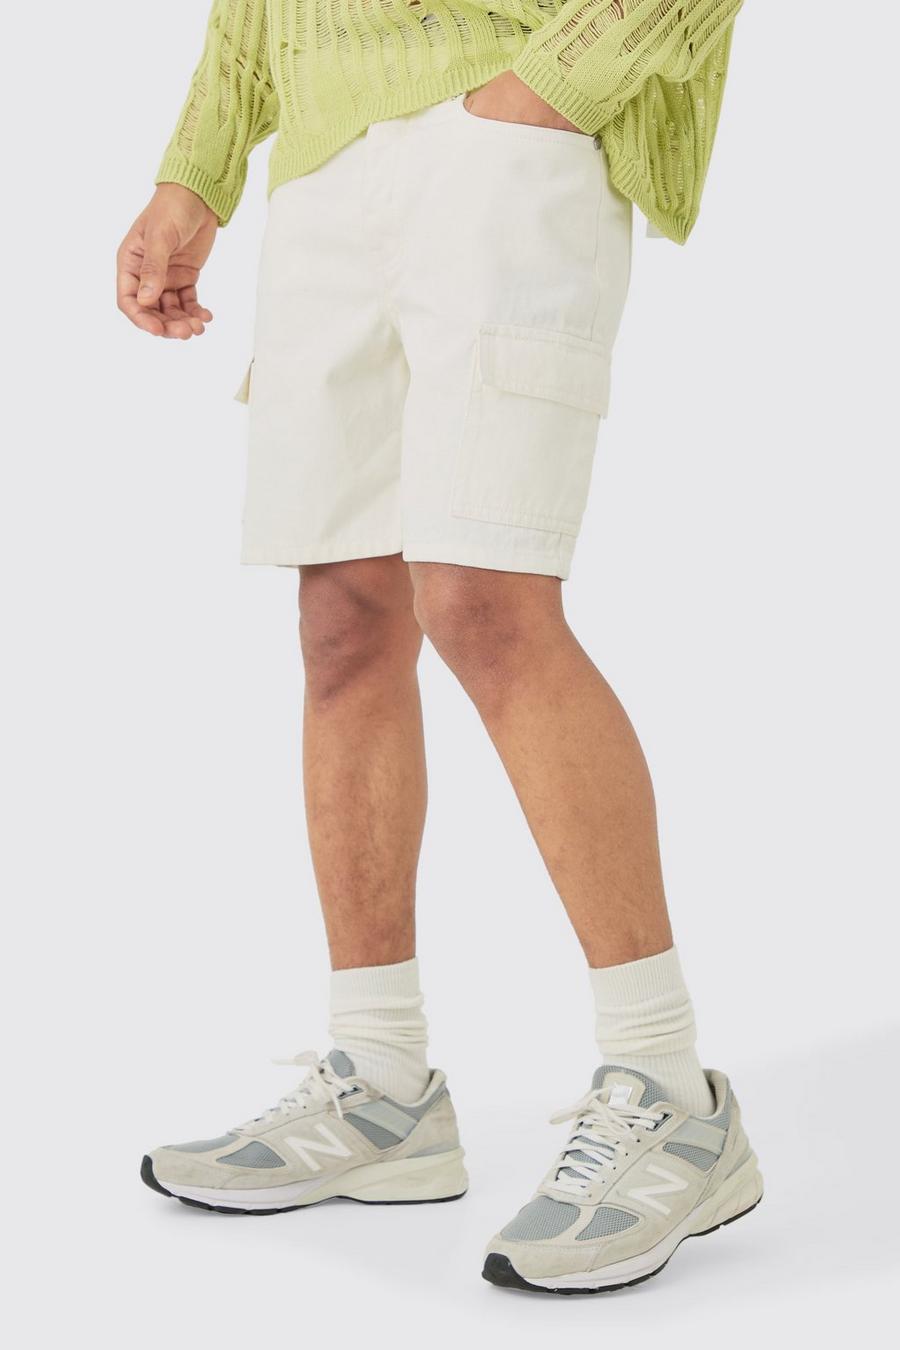 Pantalón corto vaquero cargo ajustado sin tratar en color crudo, Ecru image number 1